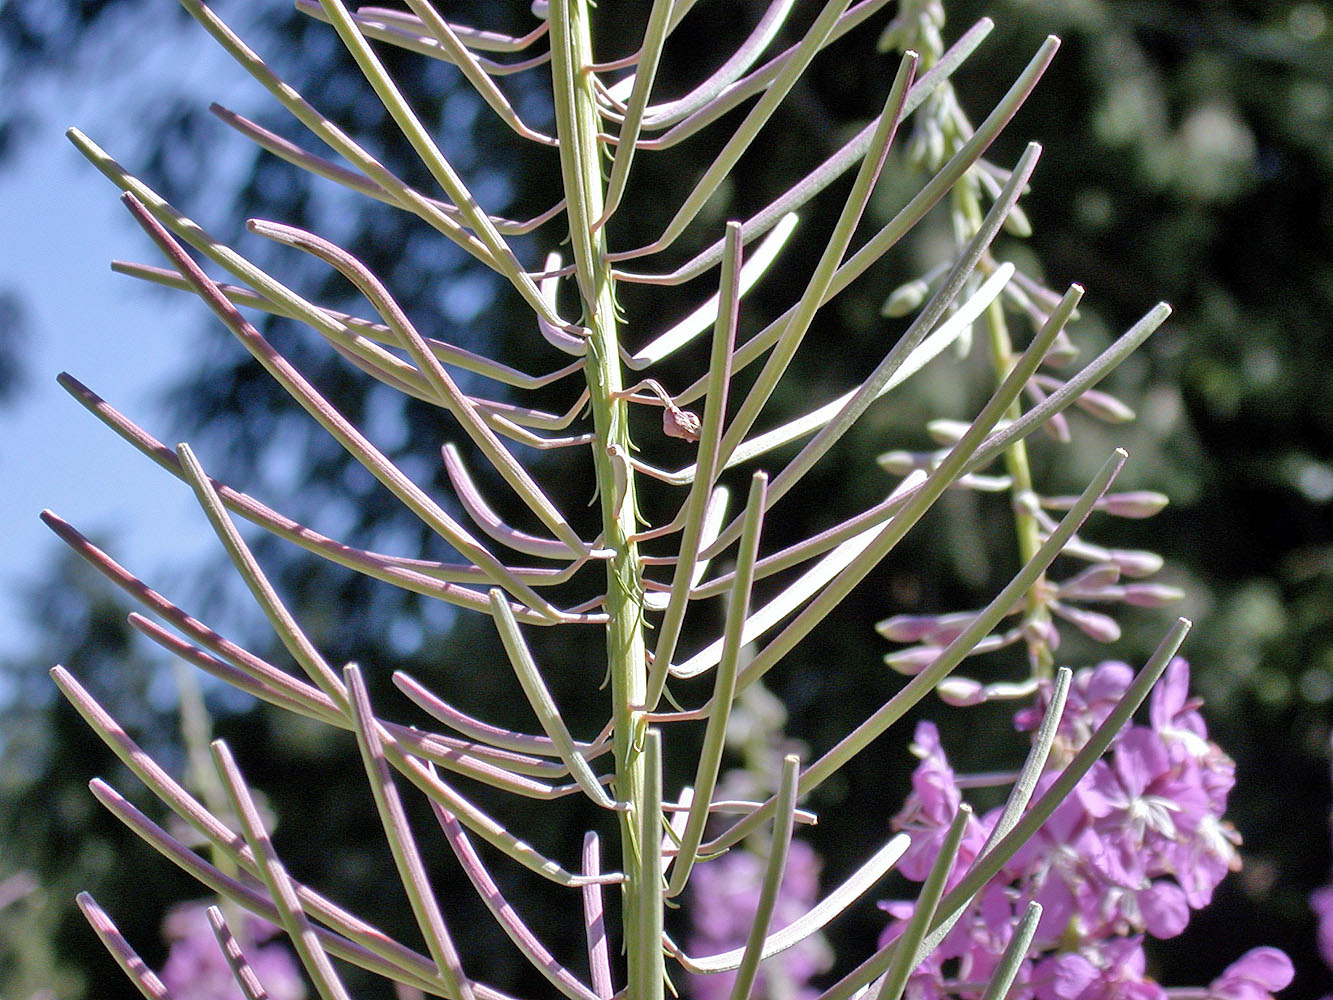 Flora of Eastern Washington Image: Chamerion angustifolium